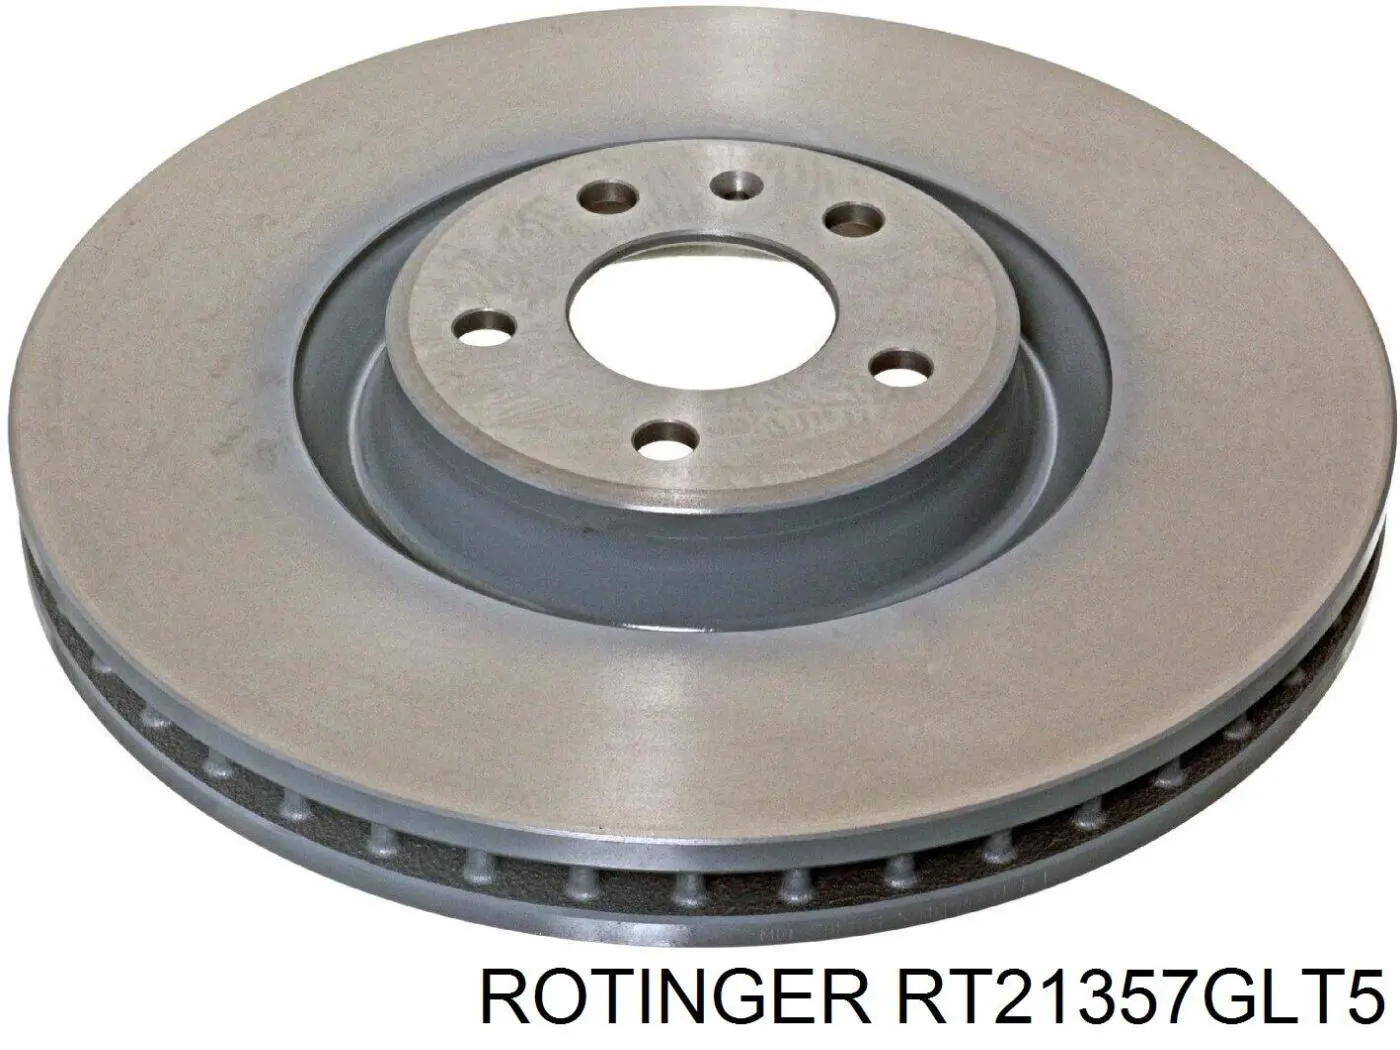 RT21357GLT5 Rotinger disco do freio dianteiro